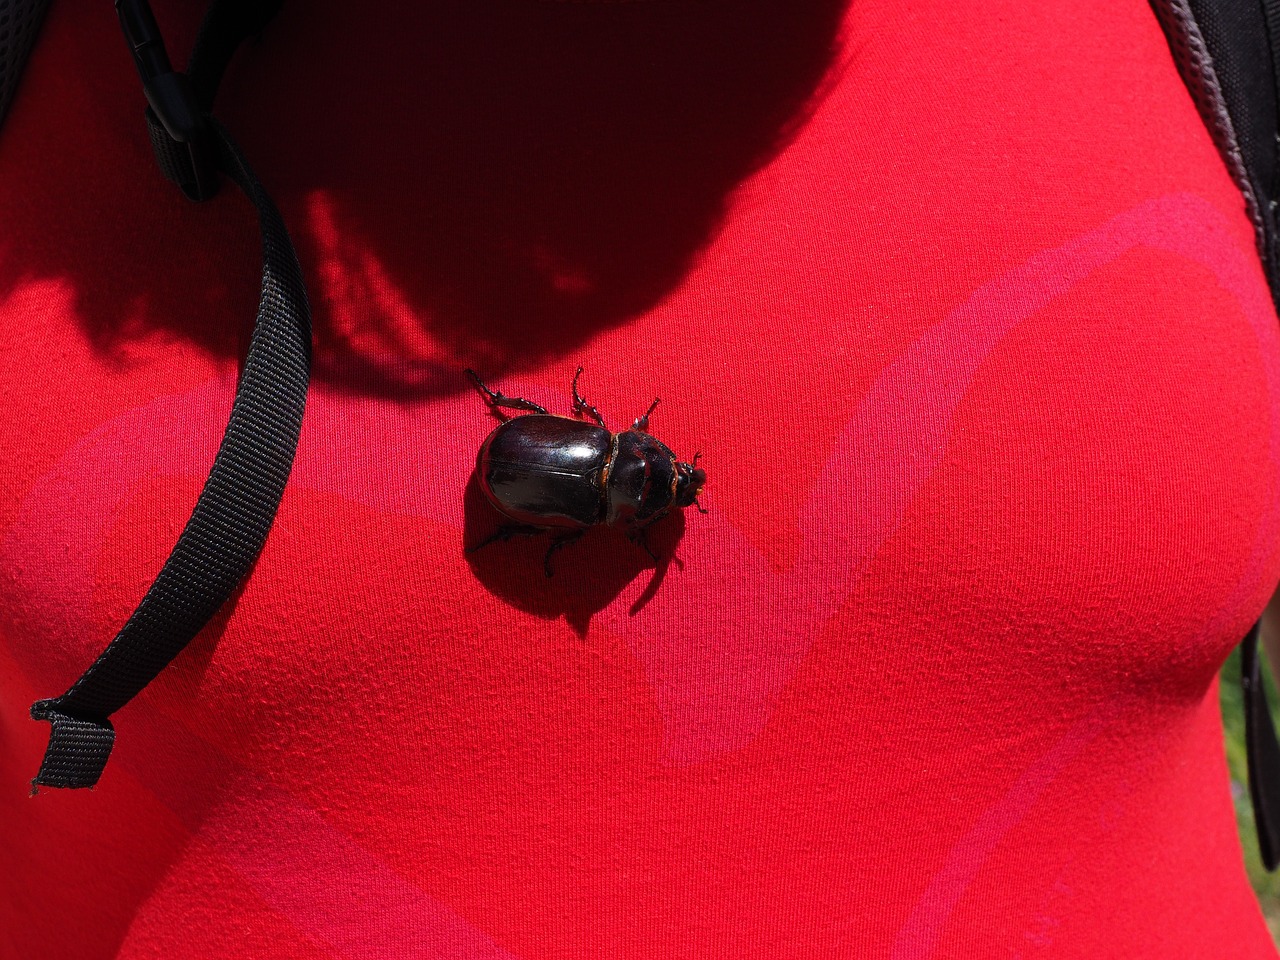 rhinoceros beetle beetle krabbeltier free photo